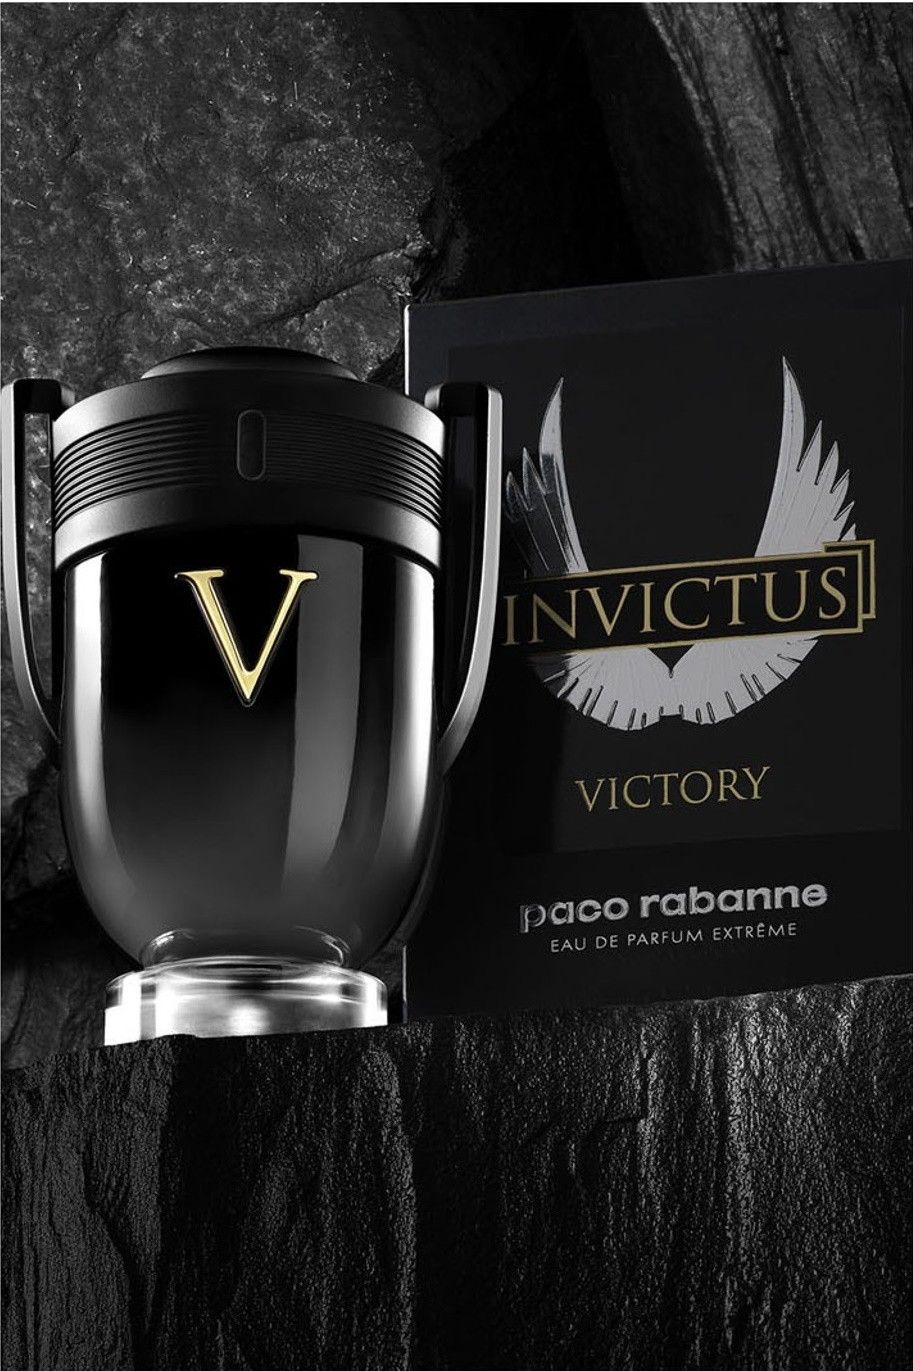 Invictus Victory nouveauté 2021 Paco Rabanne eau de parfum